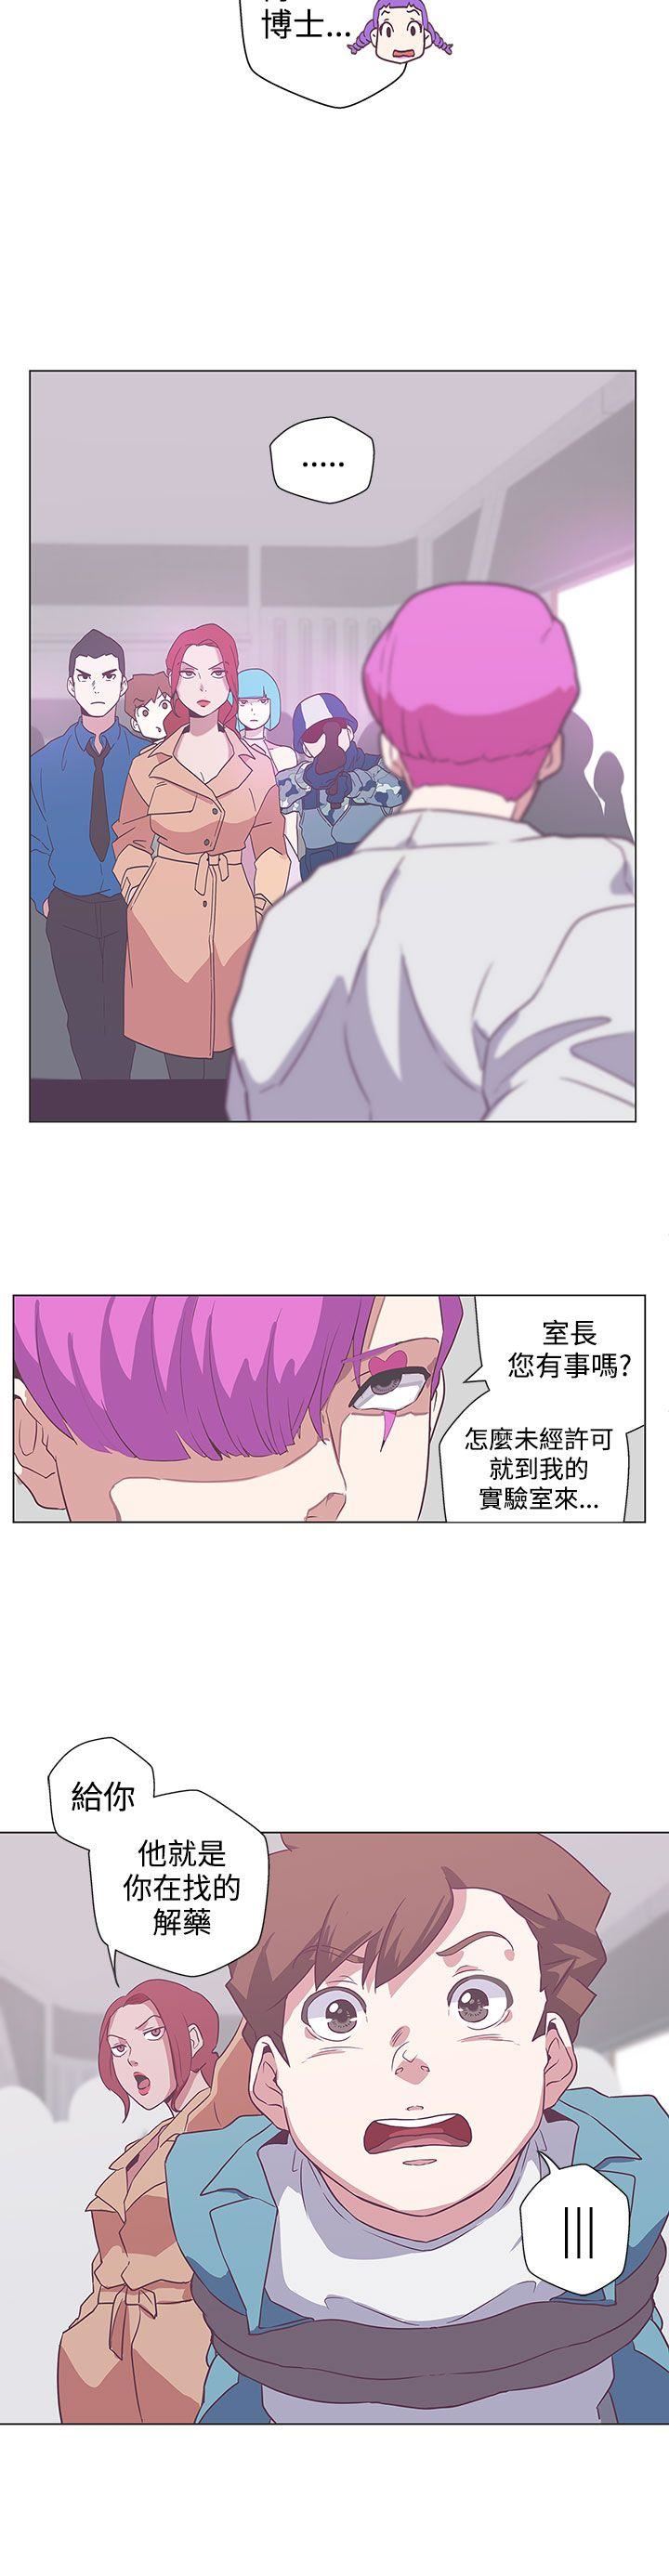 韩国污漫画 LOVE 愛的導航G 第49话 16